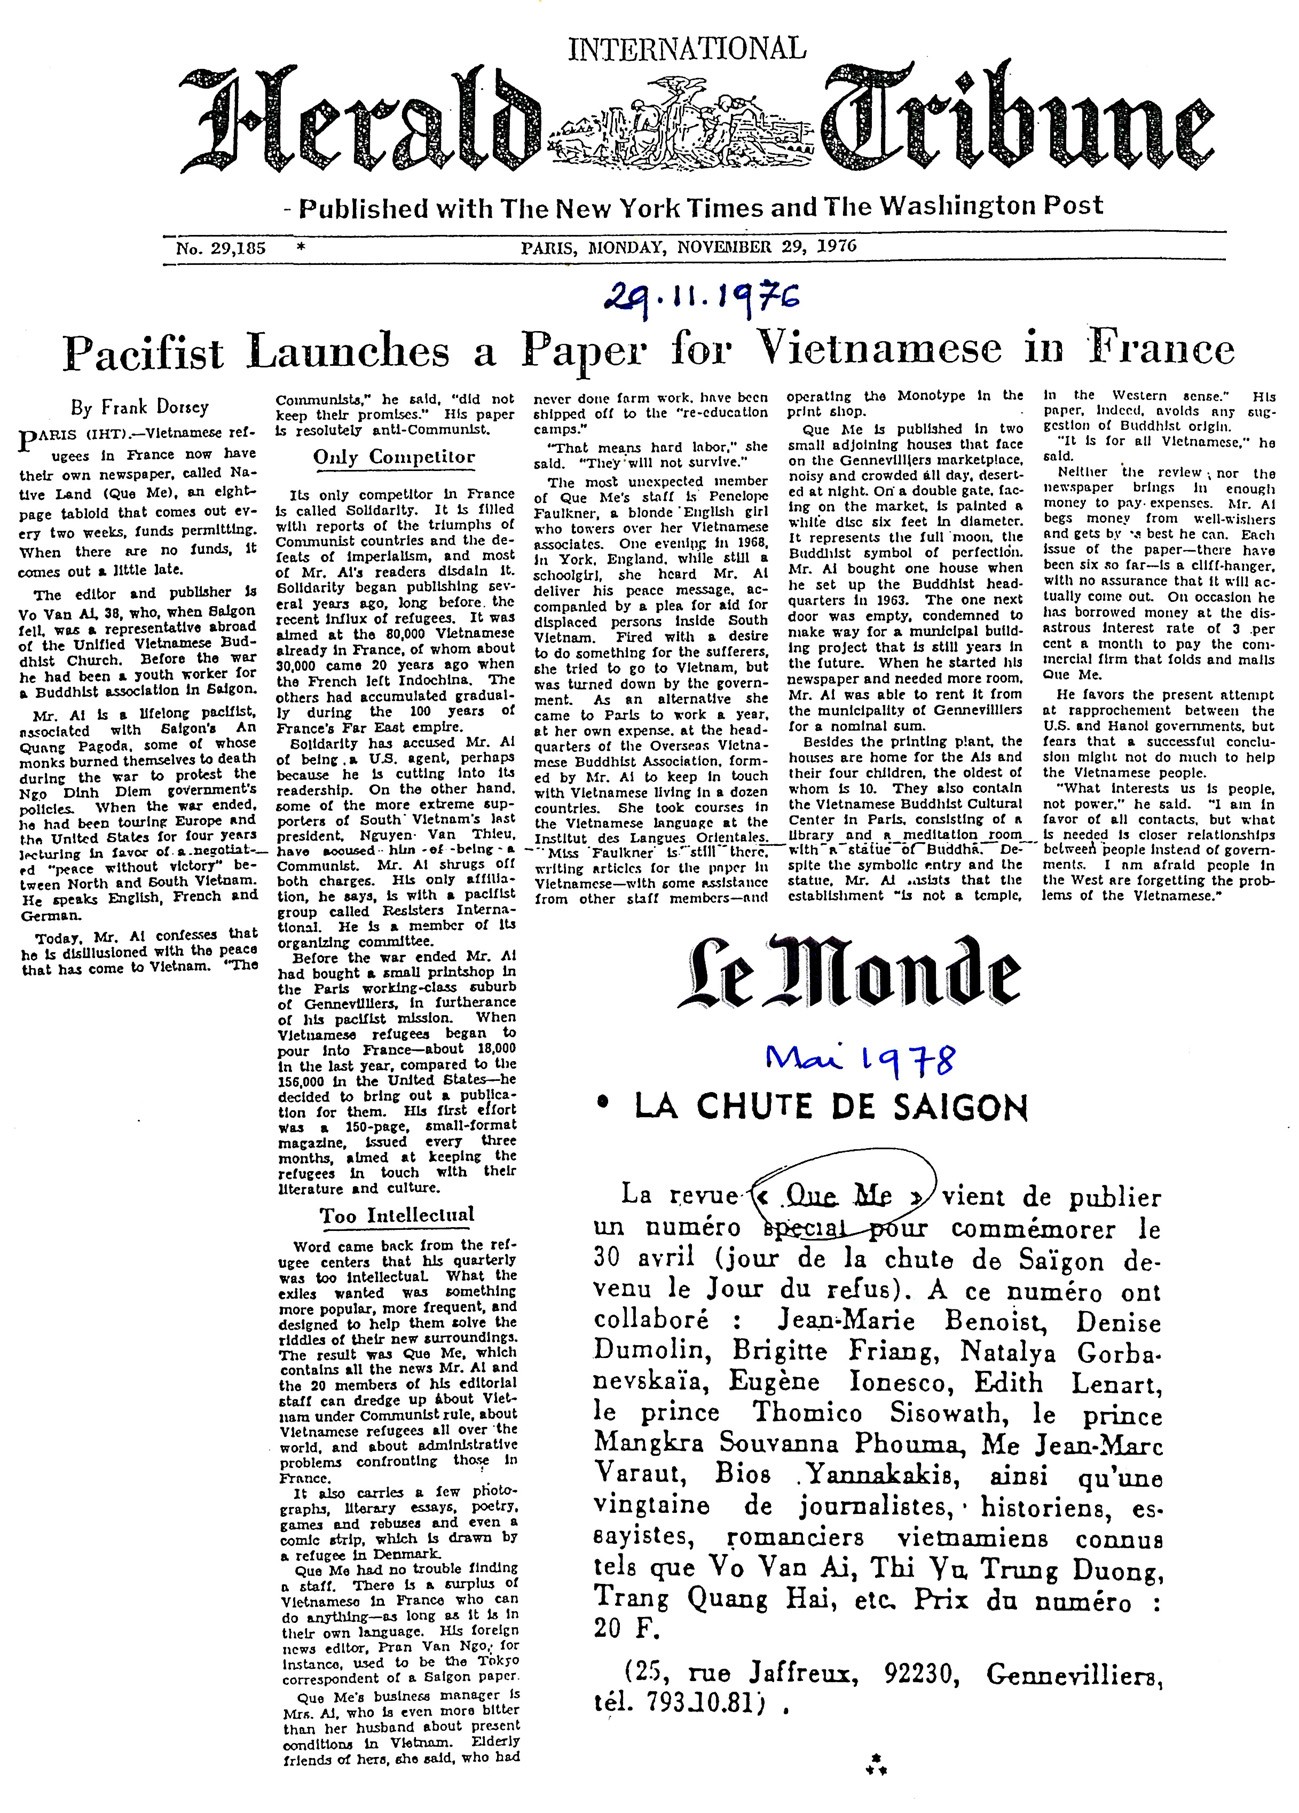 Báo International Herald Tribune Hoa Kỳ ngày 29.11.1976 viết về sự ra đời của tạp chí Quê Mẹ. Báo Le Monde Pháp giới thiệu các tác giả đóng góp số Quê Mẹ Quốc Kháng 30.4 năm 1978